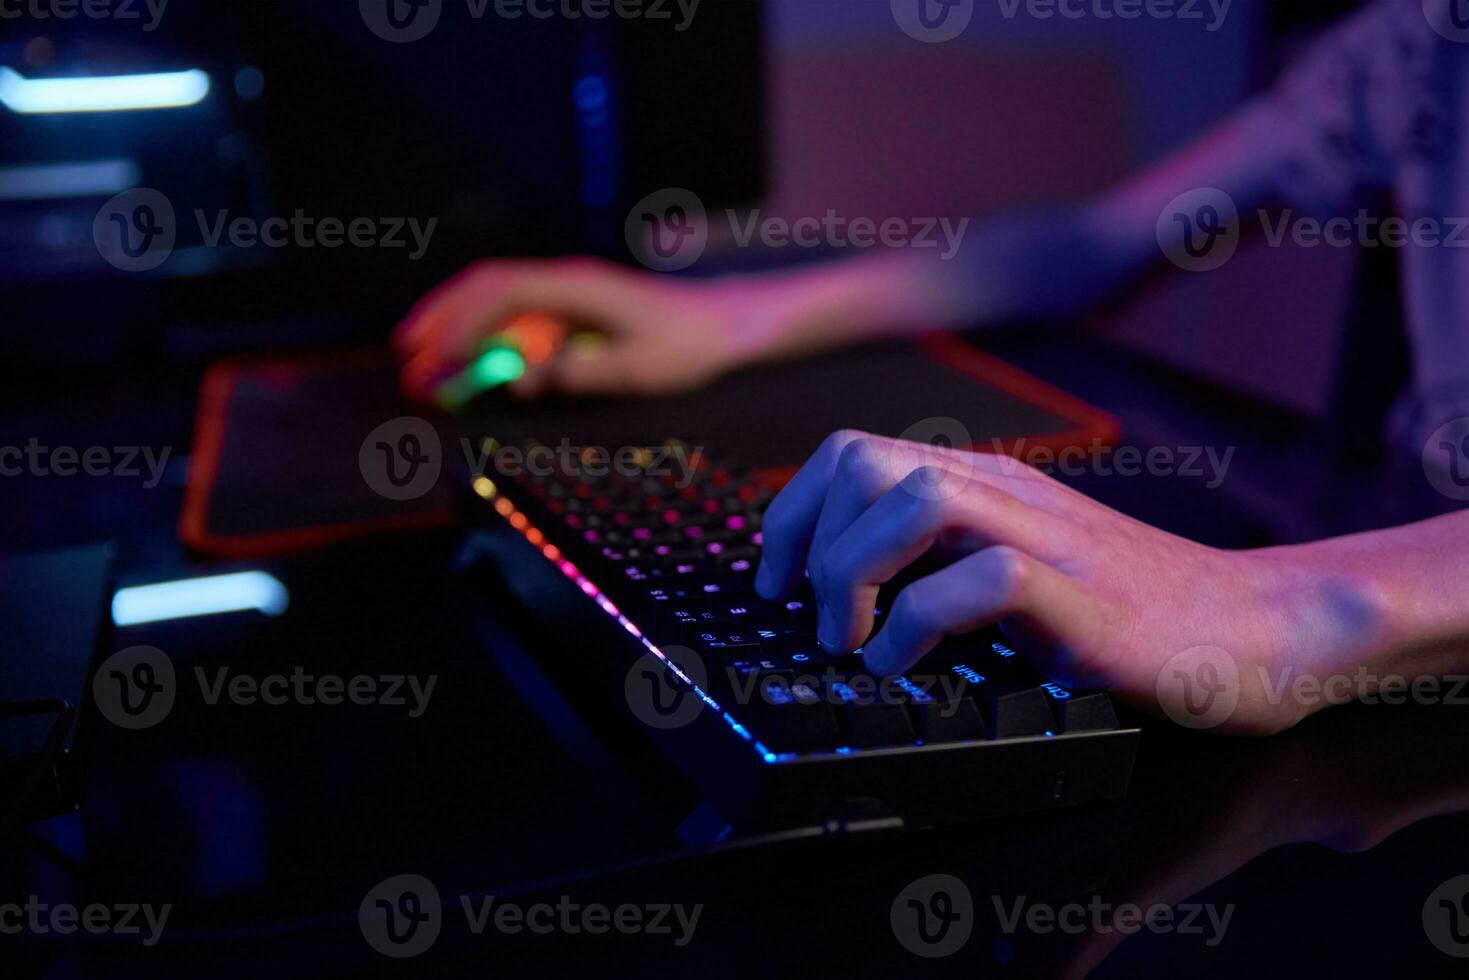 jugador jugar juego de computadora, usar teclado de color neón rgb foto